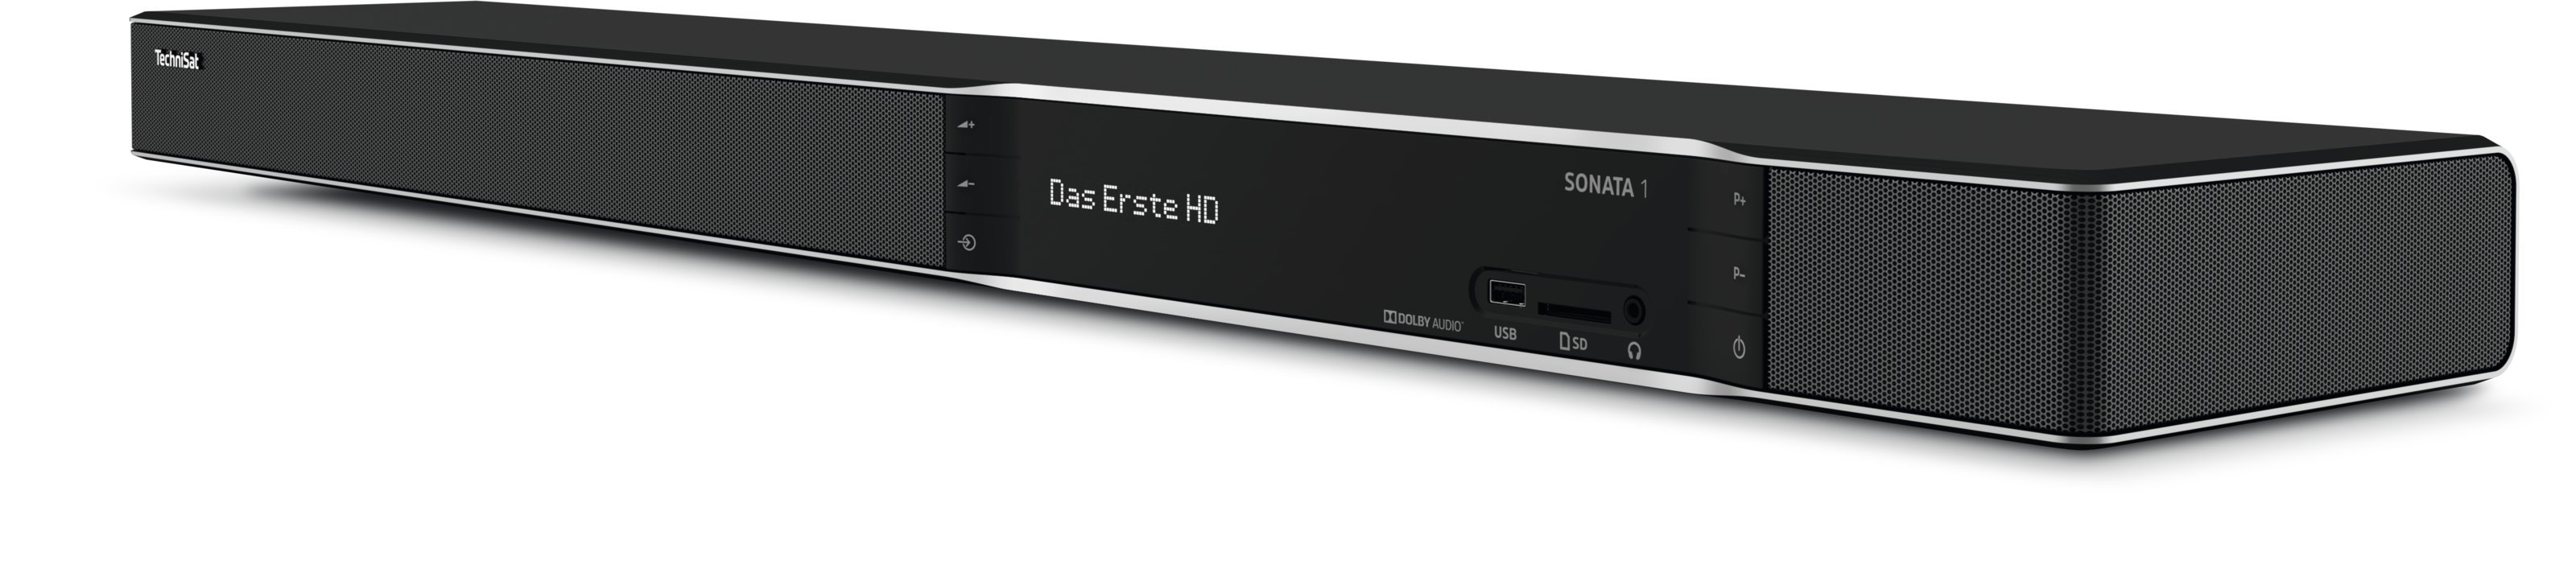 DVB-S2, UHD DVB-T2 (HDTV, DVB-C2, 1 Twin Tuner, (H.265), PVR-Funktion, SONATA Receiver (H.264), schwarz) DVB-T, DVB-T2 TECHNISAT